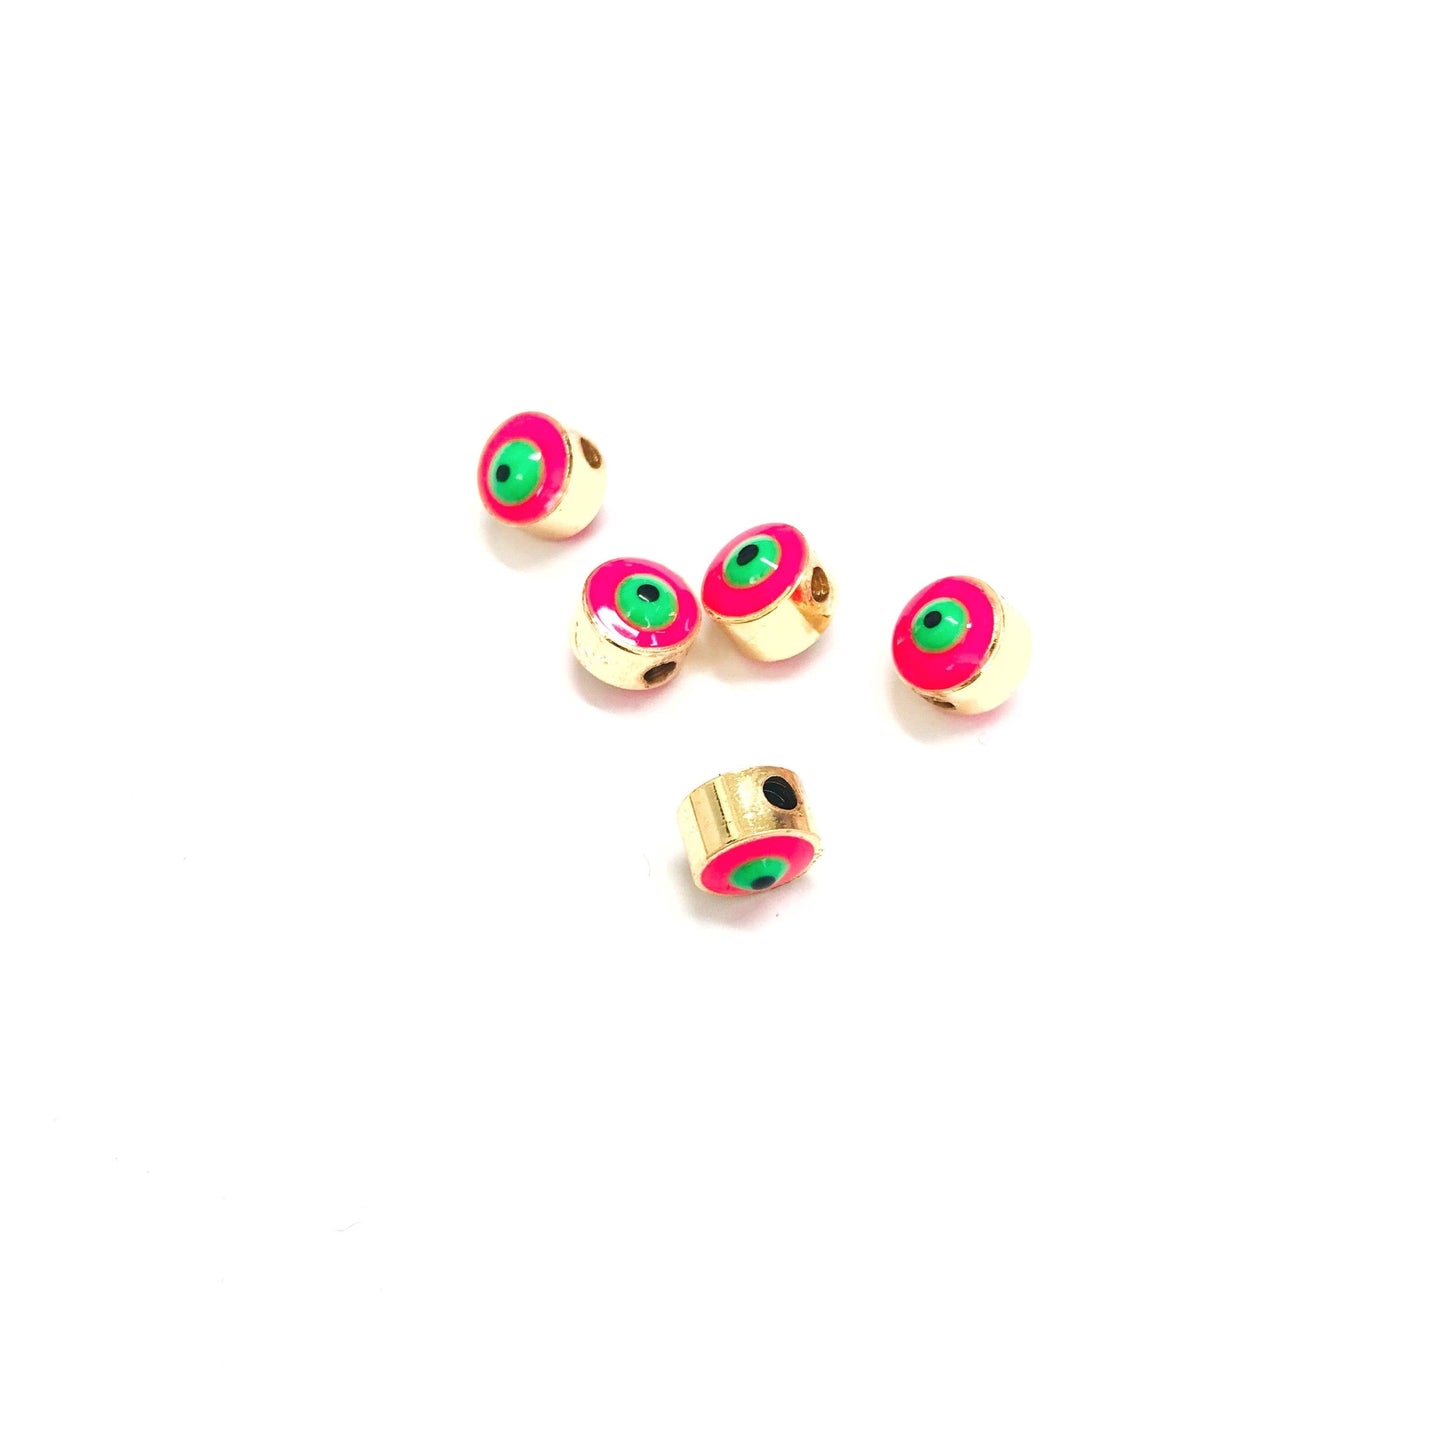 Vergoldete Evil Eye Beads 6mm - Neon Pink 